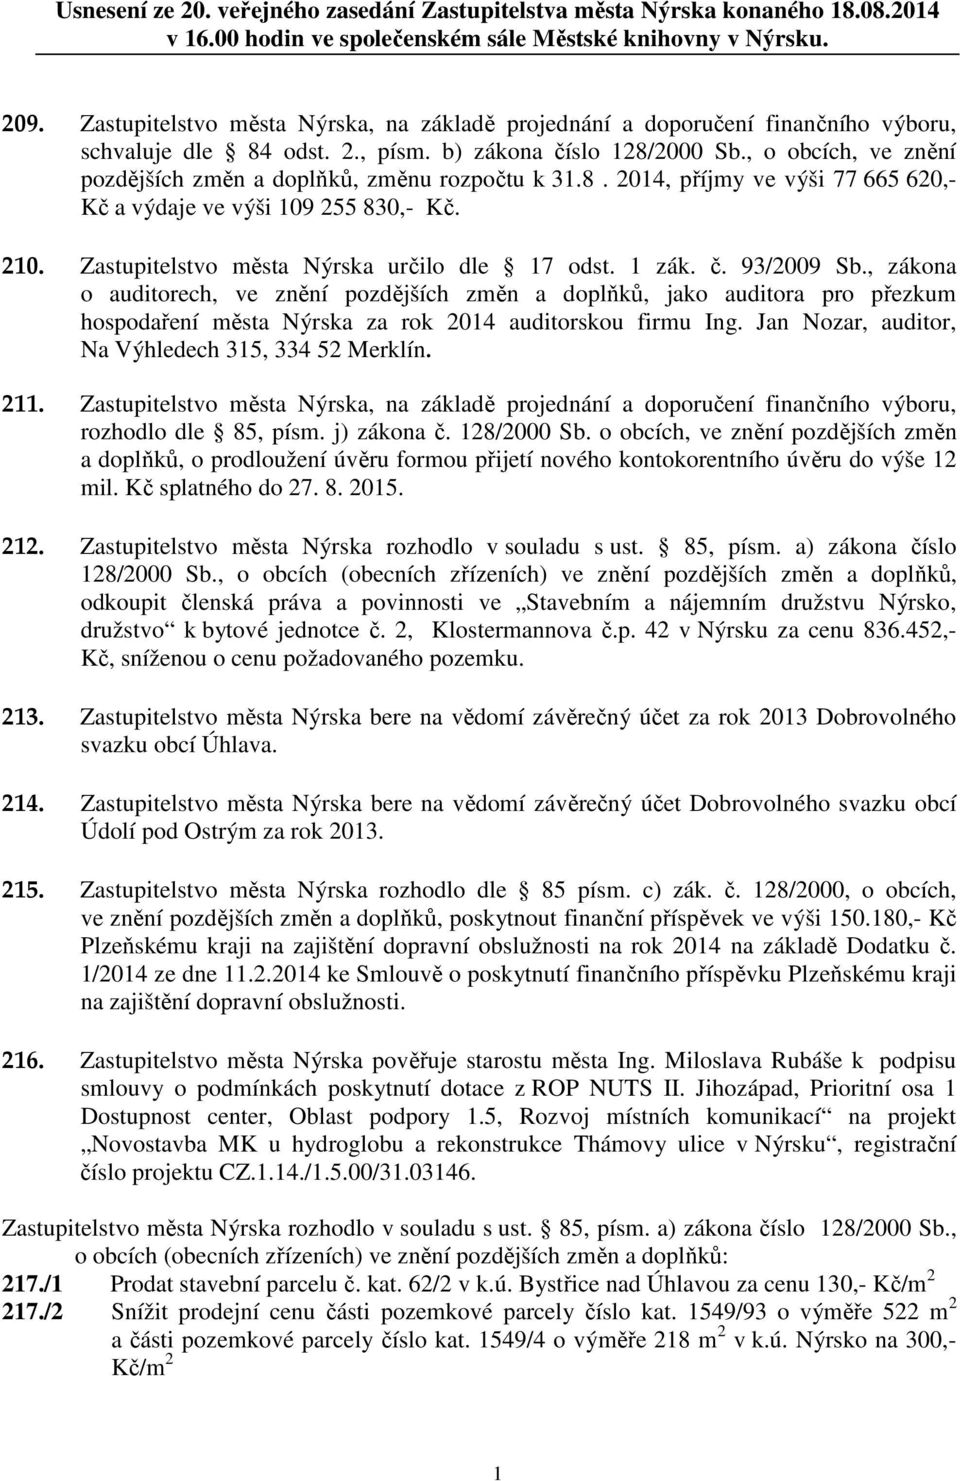 , o obcích, ve znění pozdějších změn a doplňků, změnu rozpočtu k 31.8. 2014, příjmy ve výši 77 665 620,- Kč a výdaje ve výši 109 255 830,- Kč. 210. Zastupitelstvo města Nýrska určilo dle 17 odst.